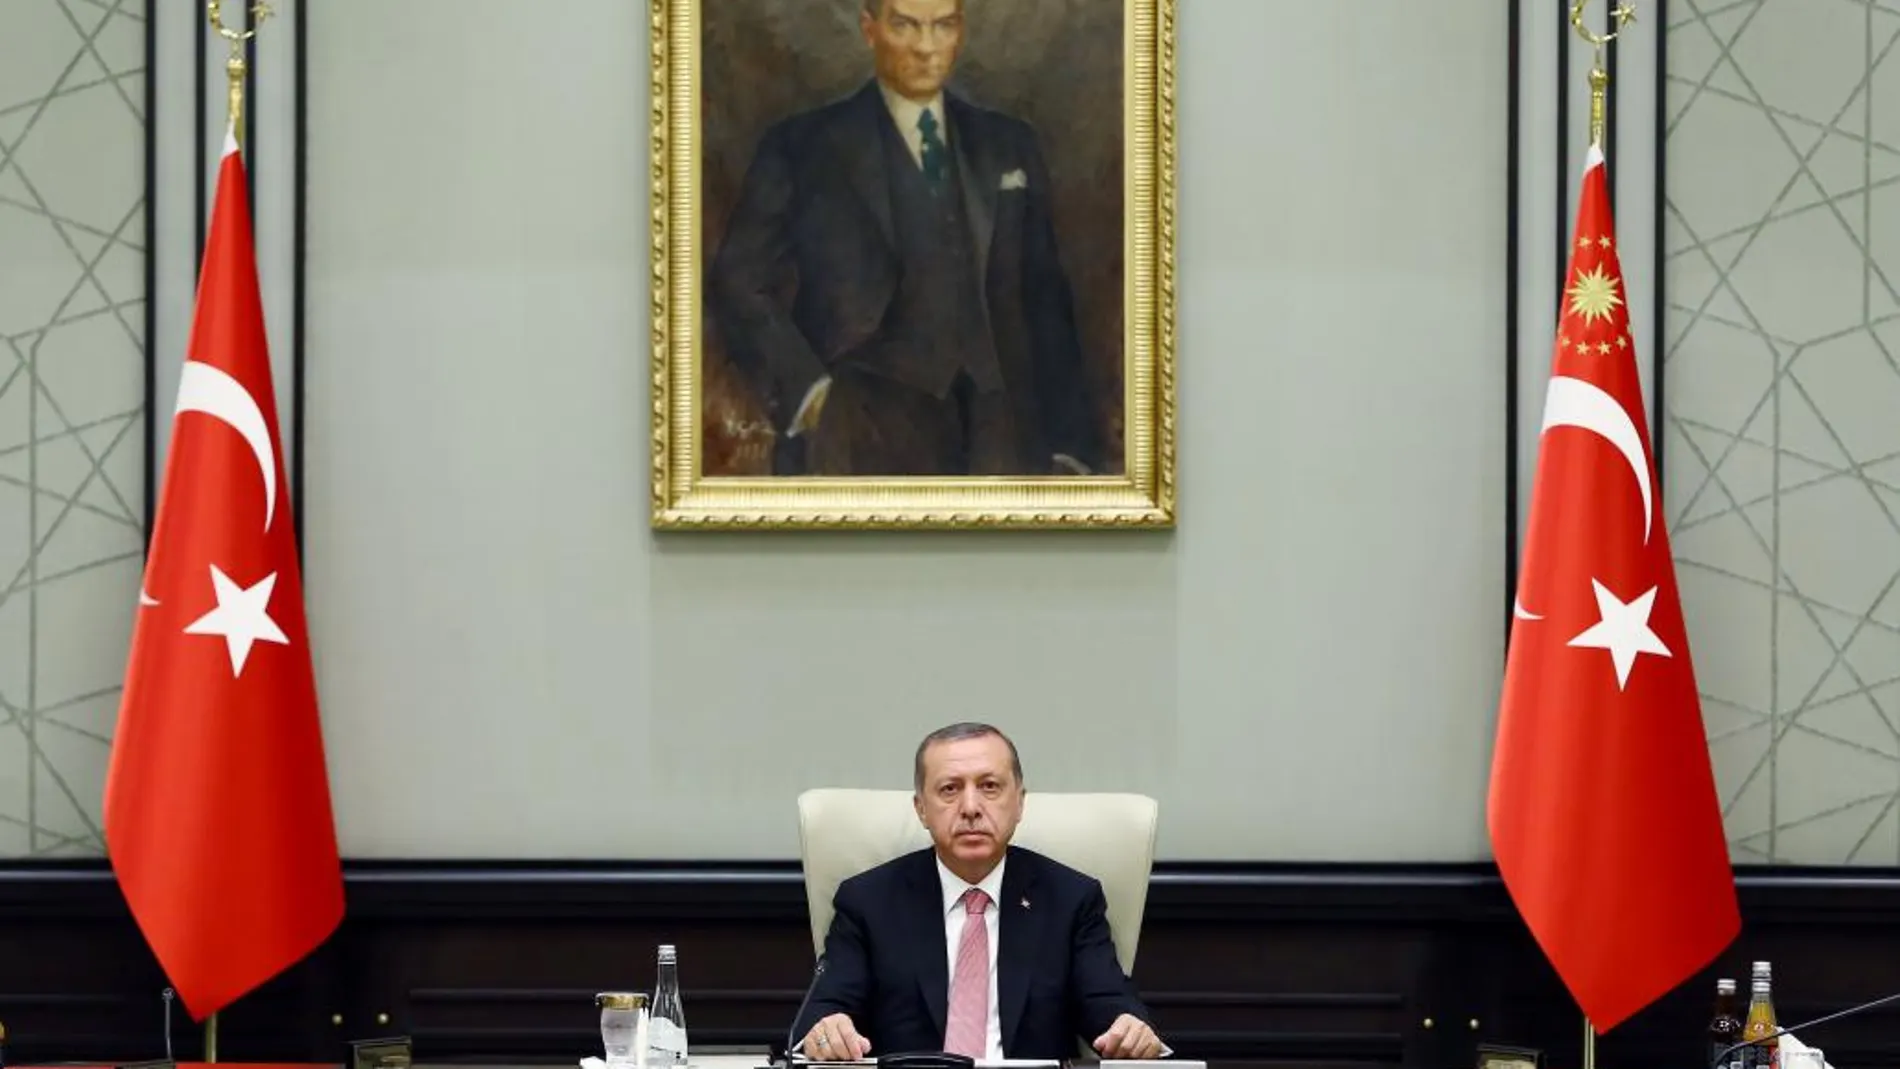 El presidente turco, Recep Tayyip Erdogan, en el palacio presidencial